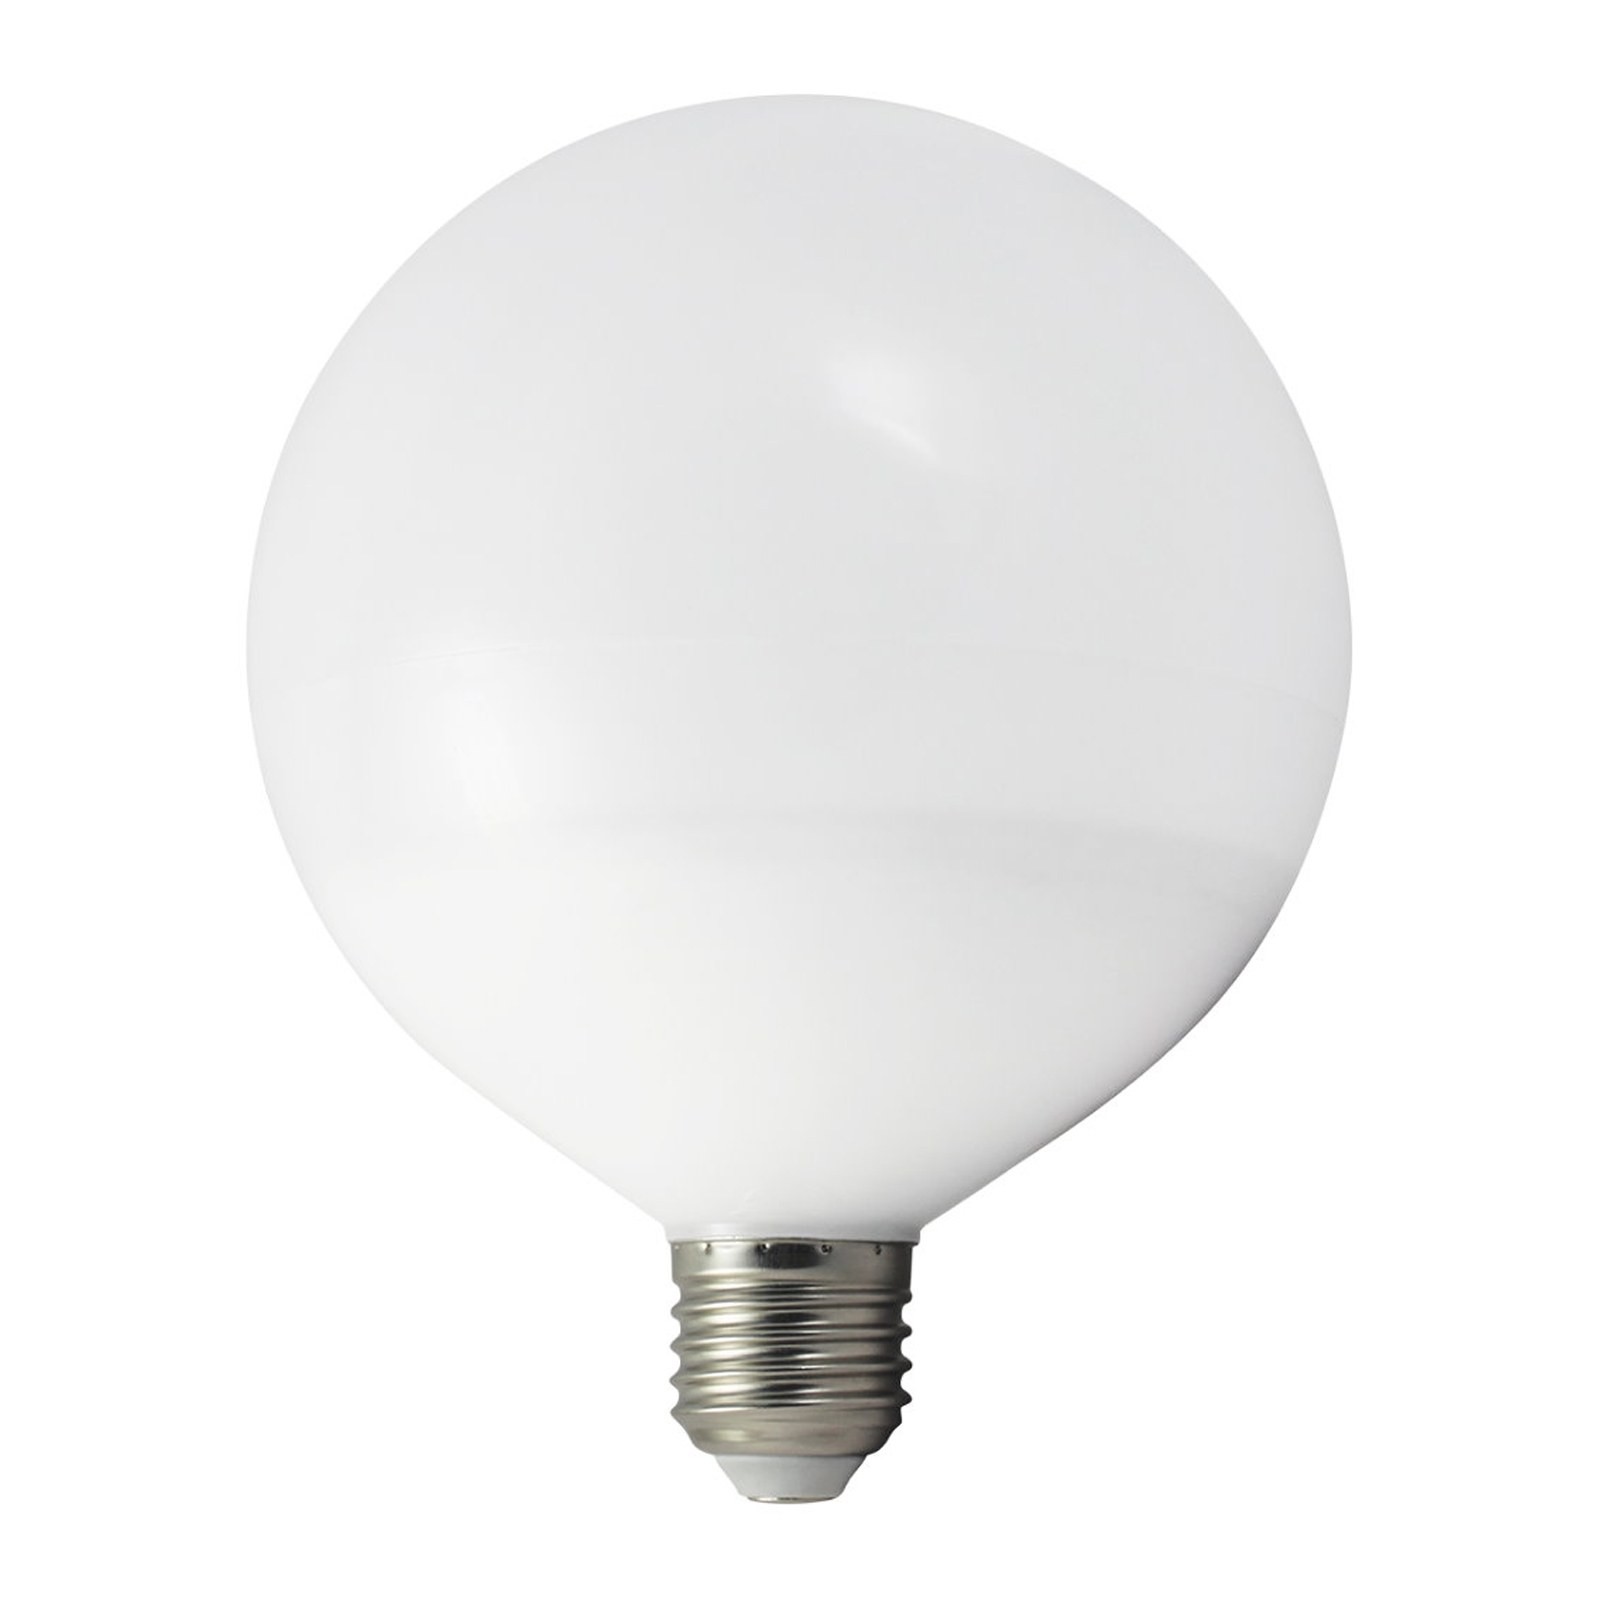 Lampada lampadina led attacco e27 12 watt globo luce for Luce bianca led